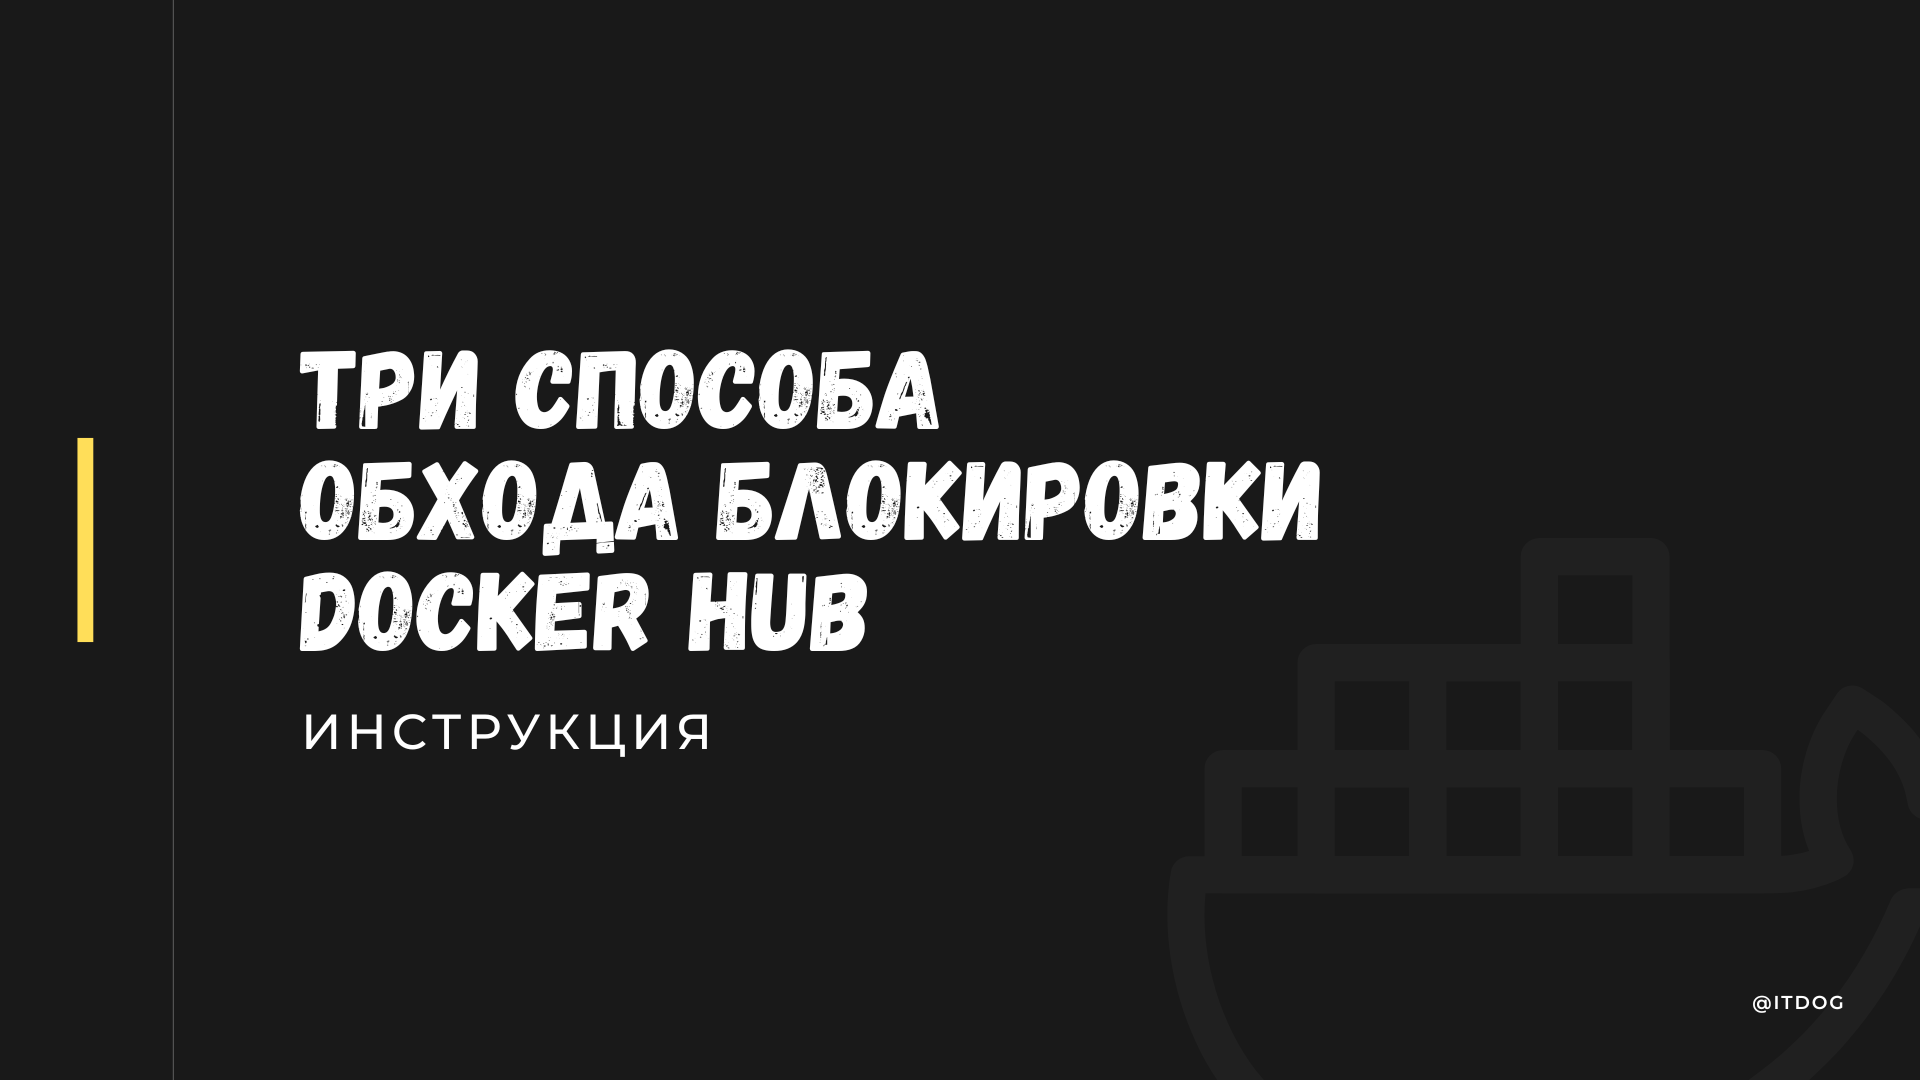 Блокировка Docker Hub для России. Без паники разбираемся как работать дальше - 1